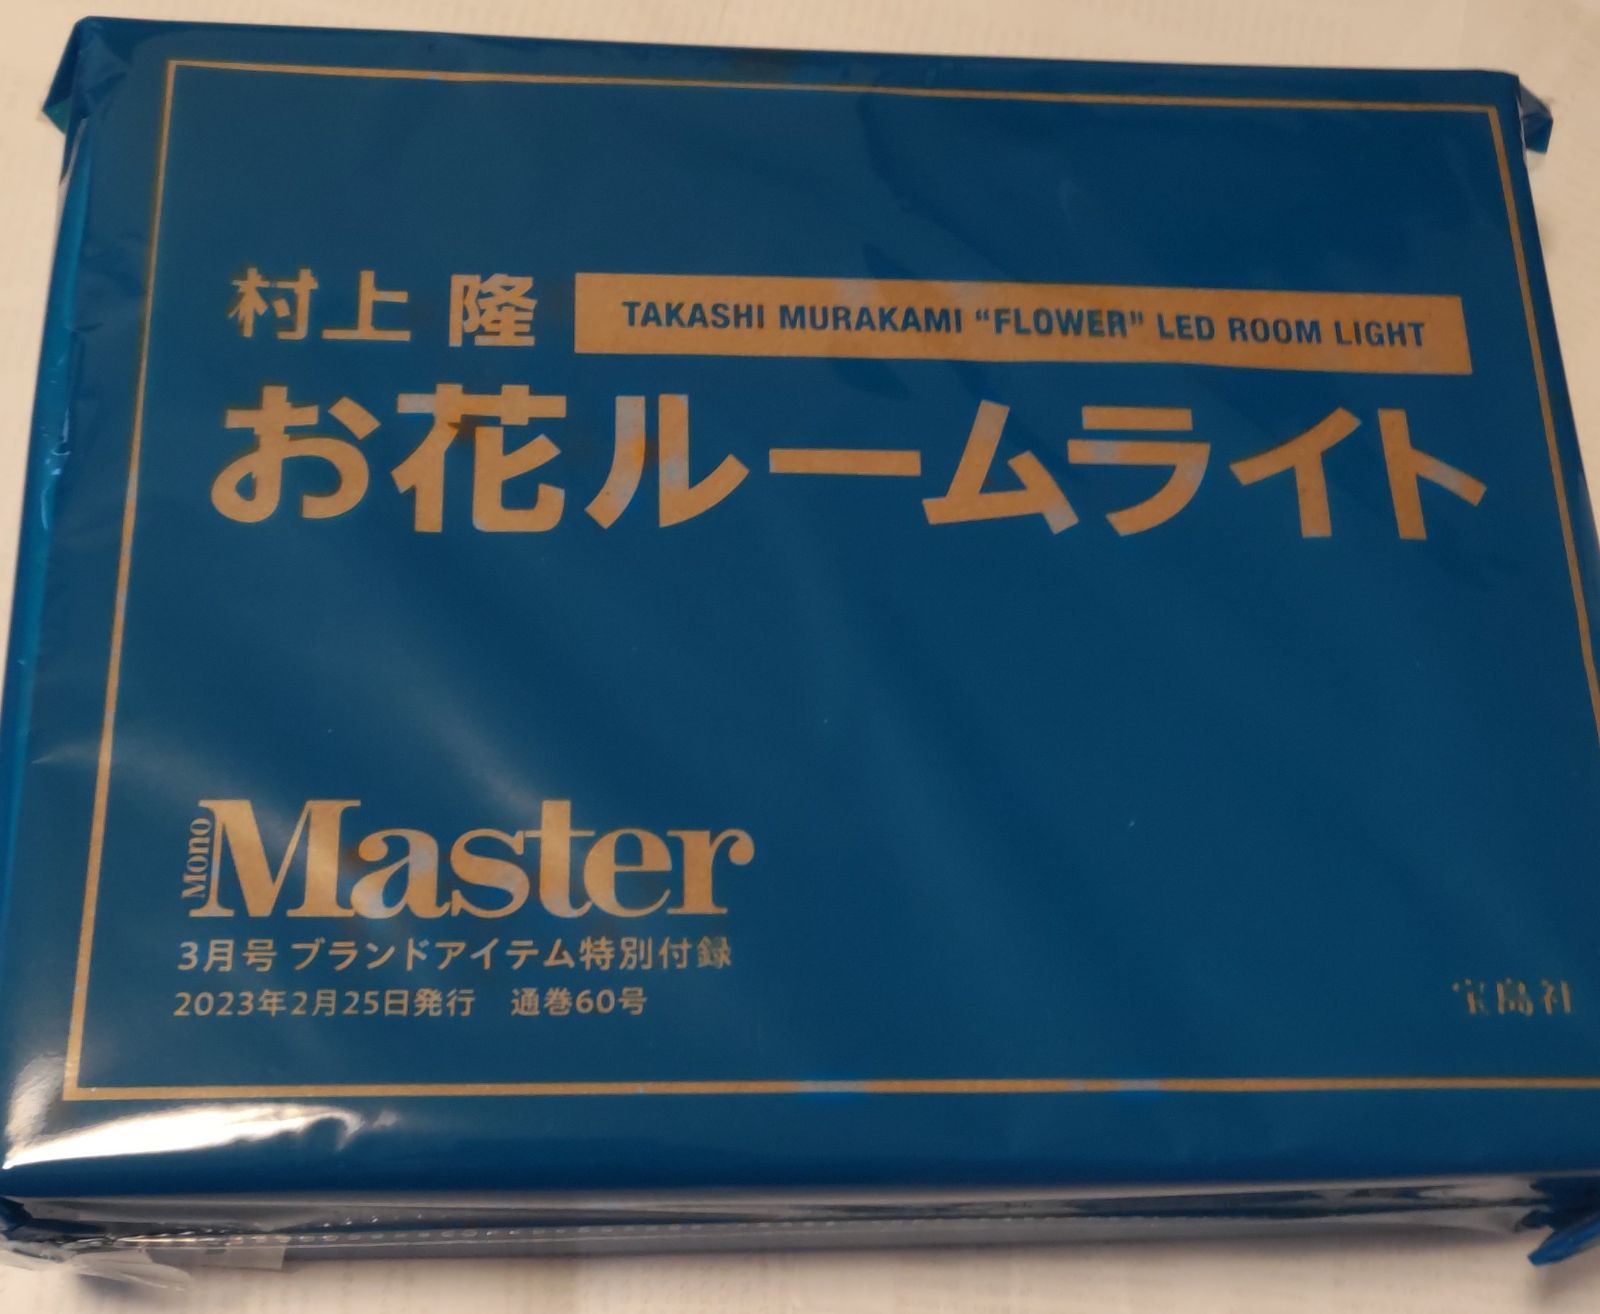 MonoMaster 2023年3月号 付録 村上 隆 お花ルームライト 【送料無料